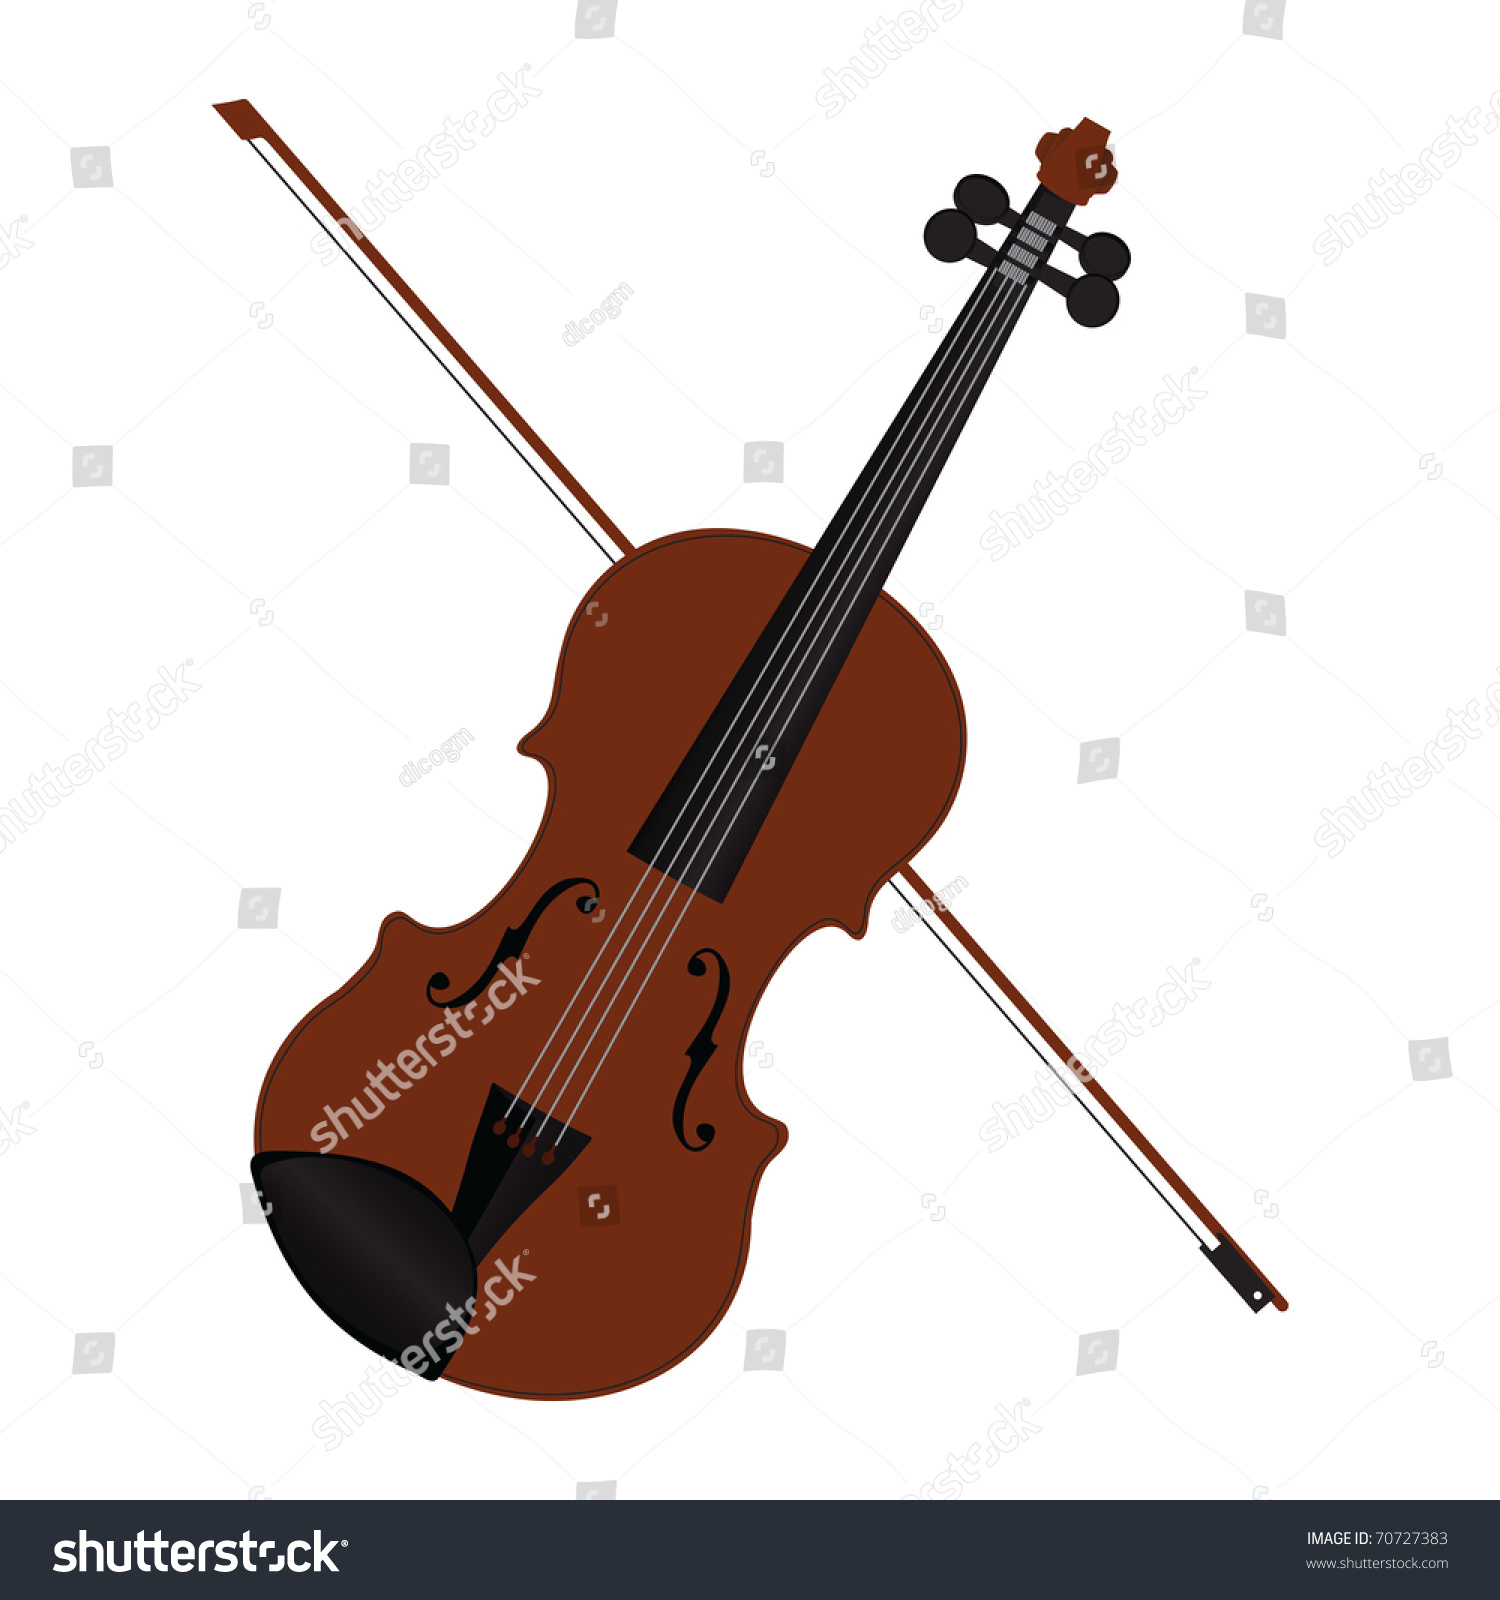 Violin Vector Illustration - 70727383 : Shutterstock